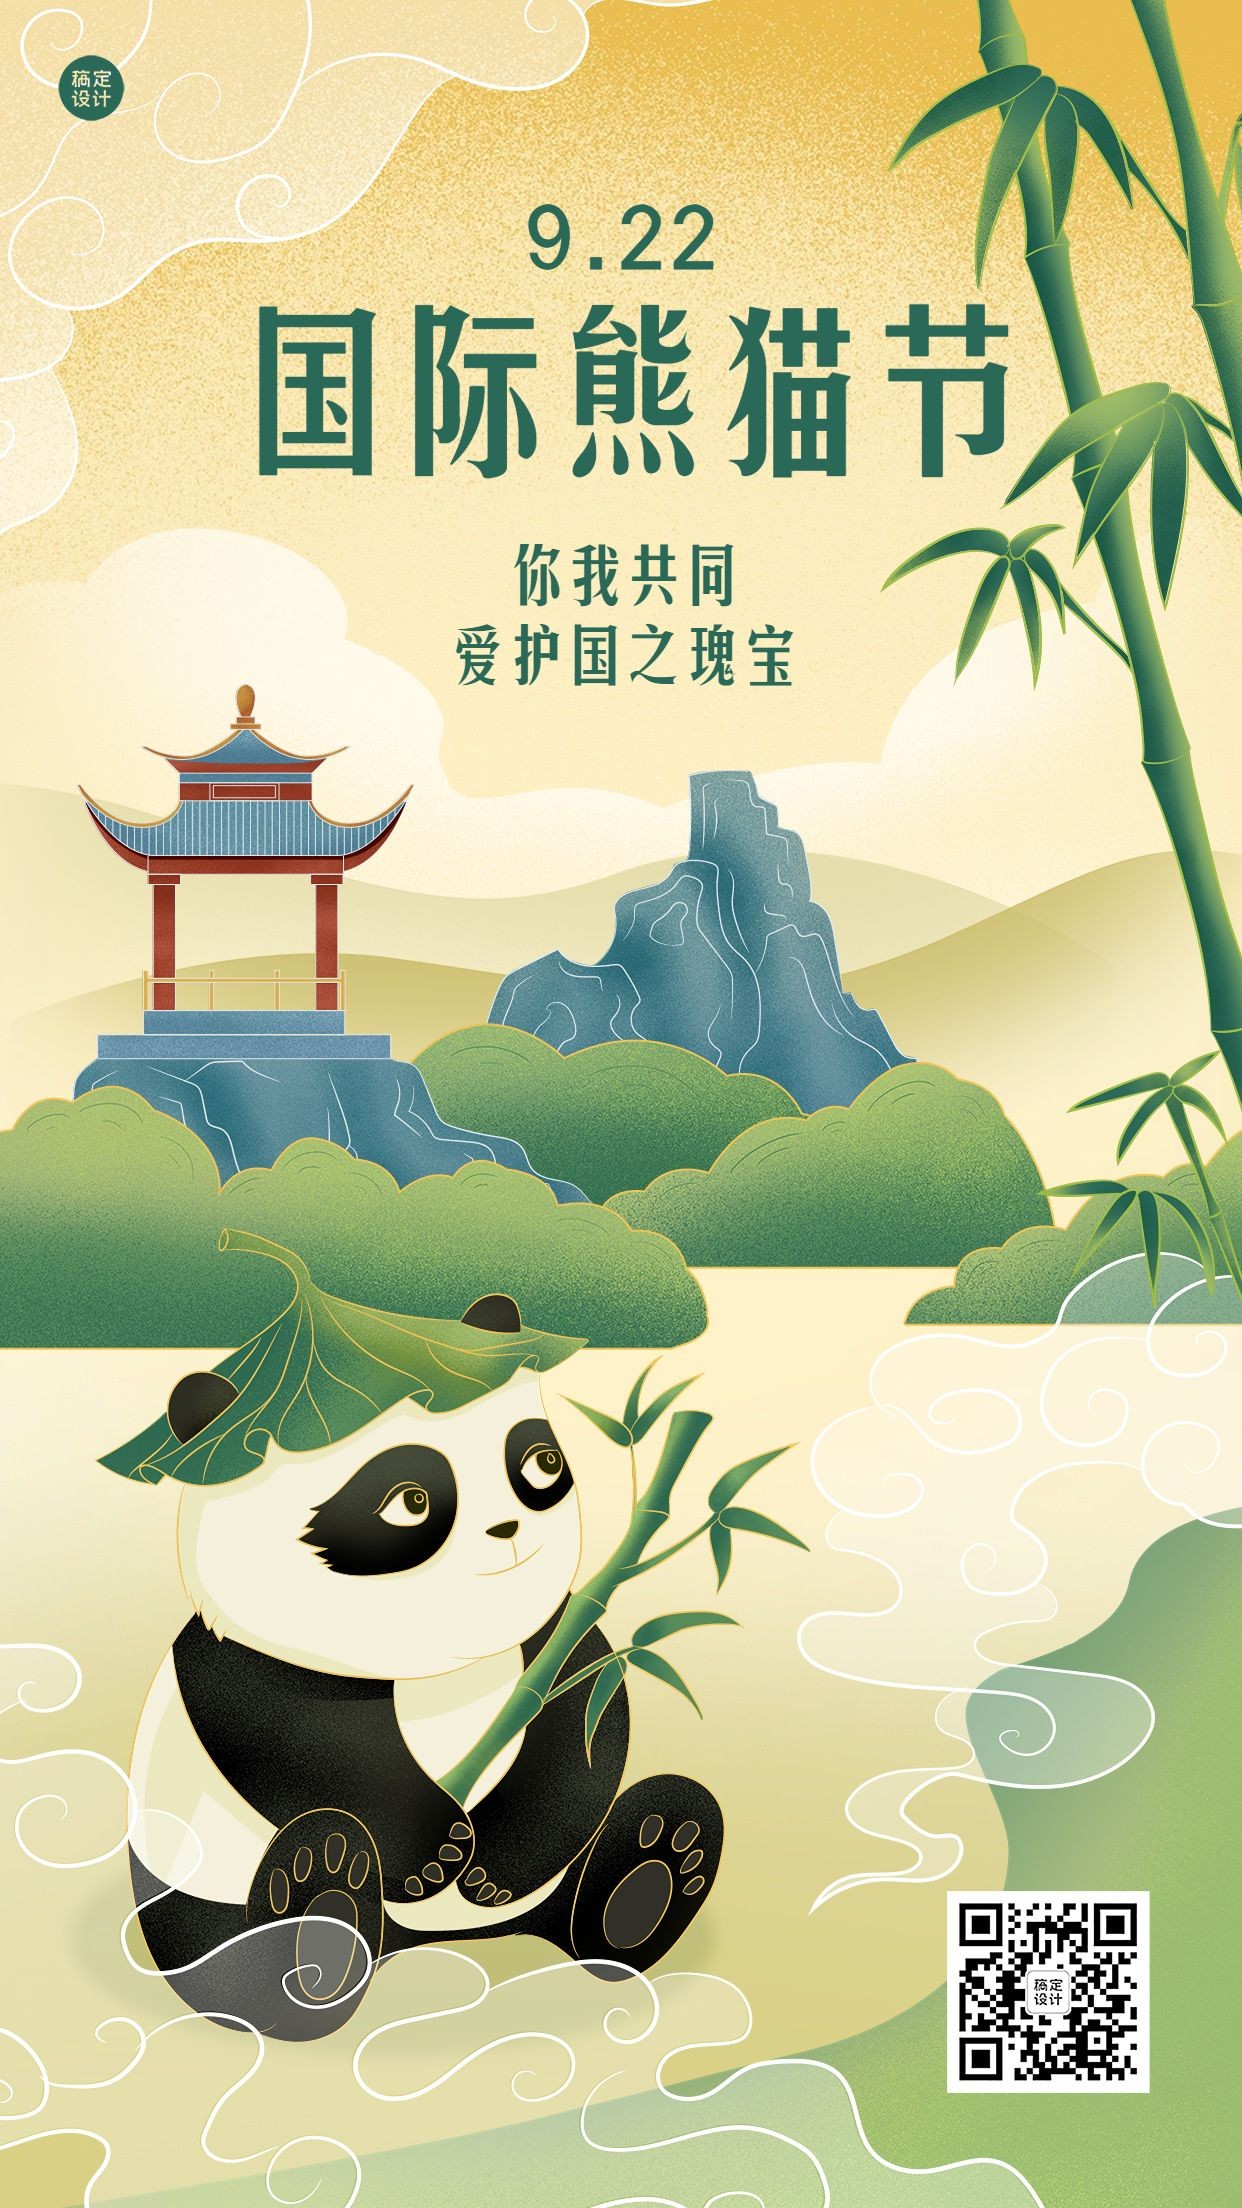 国际熊猫节节日宣传手绘插画手机海报熊猫预览效果